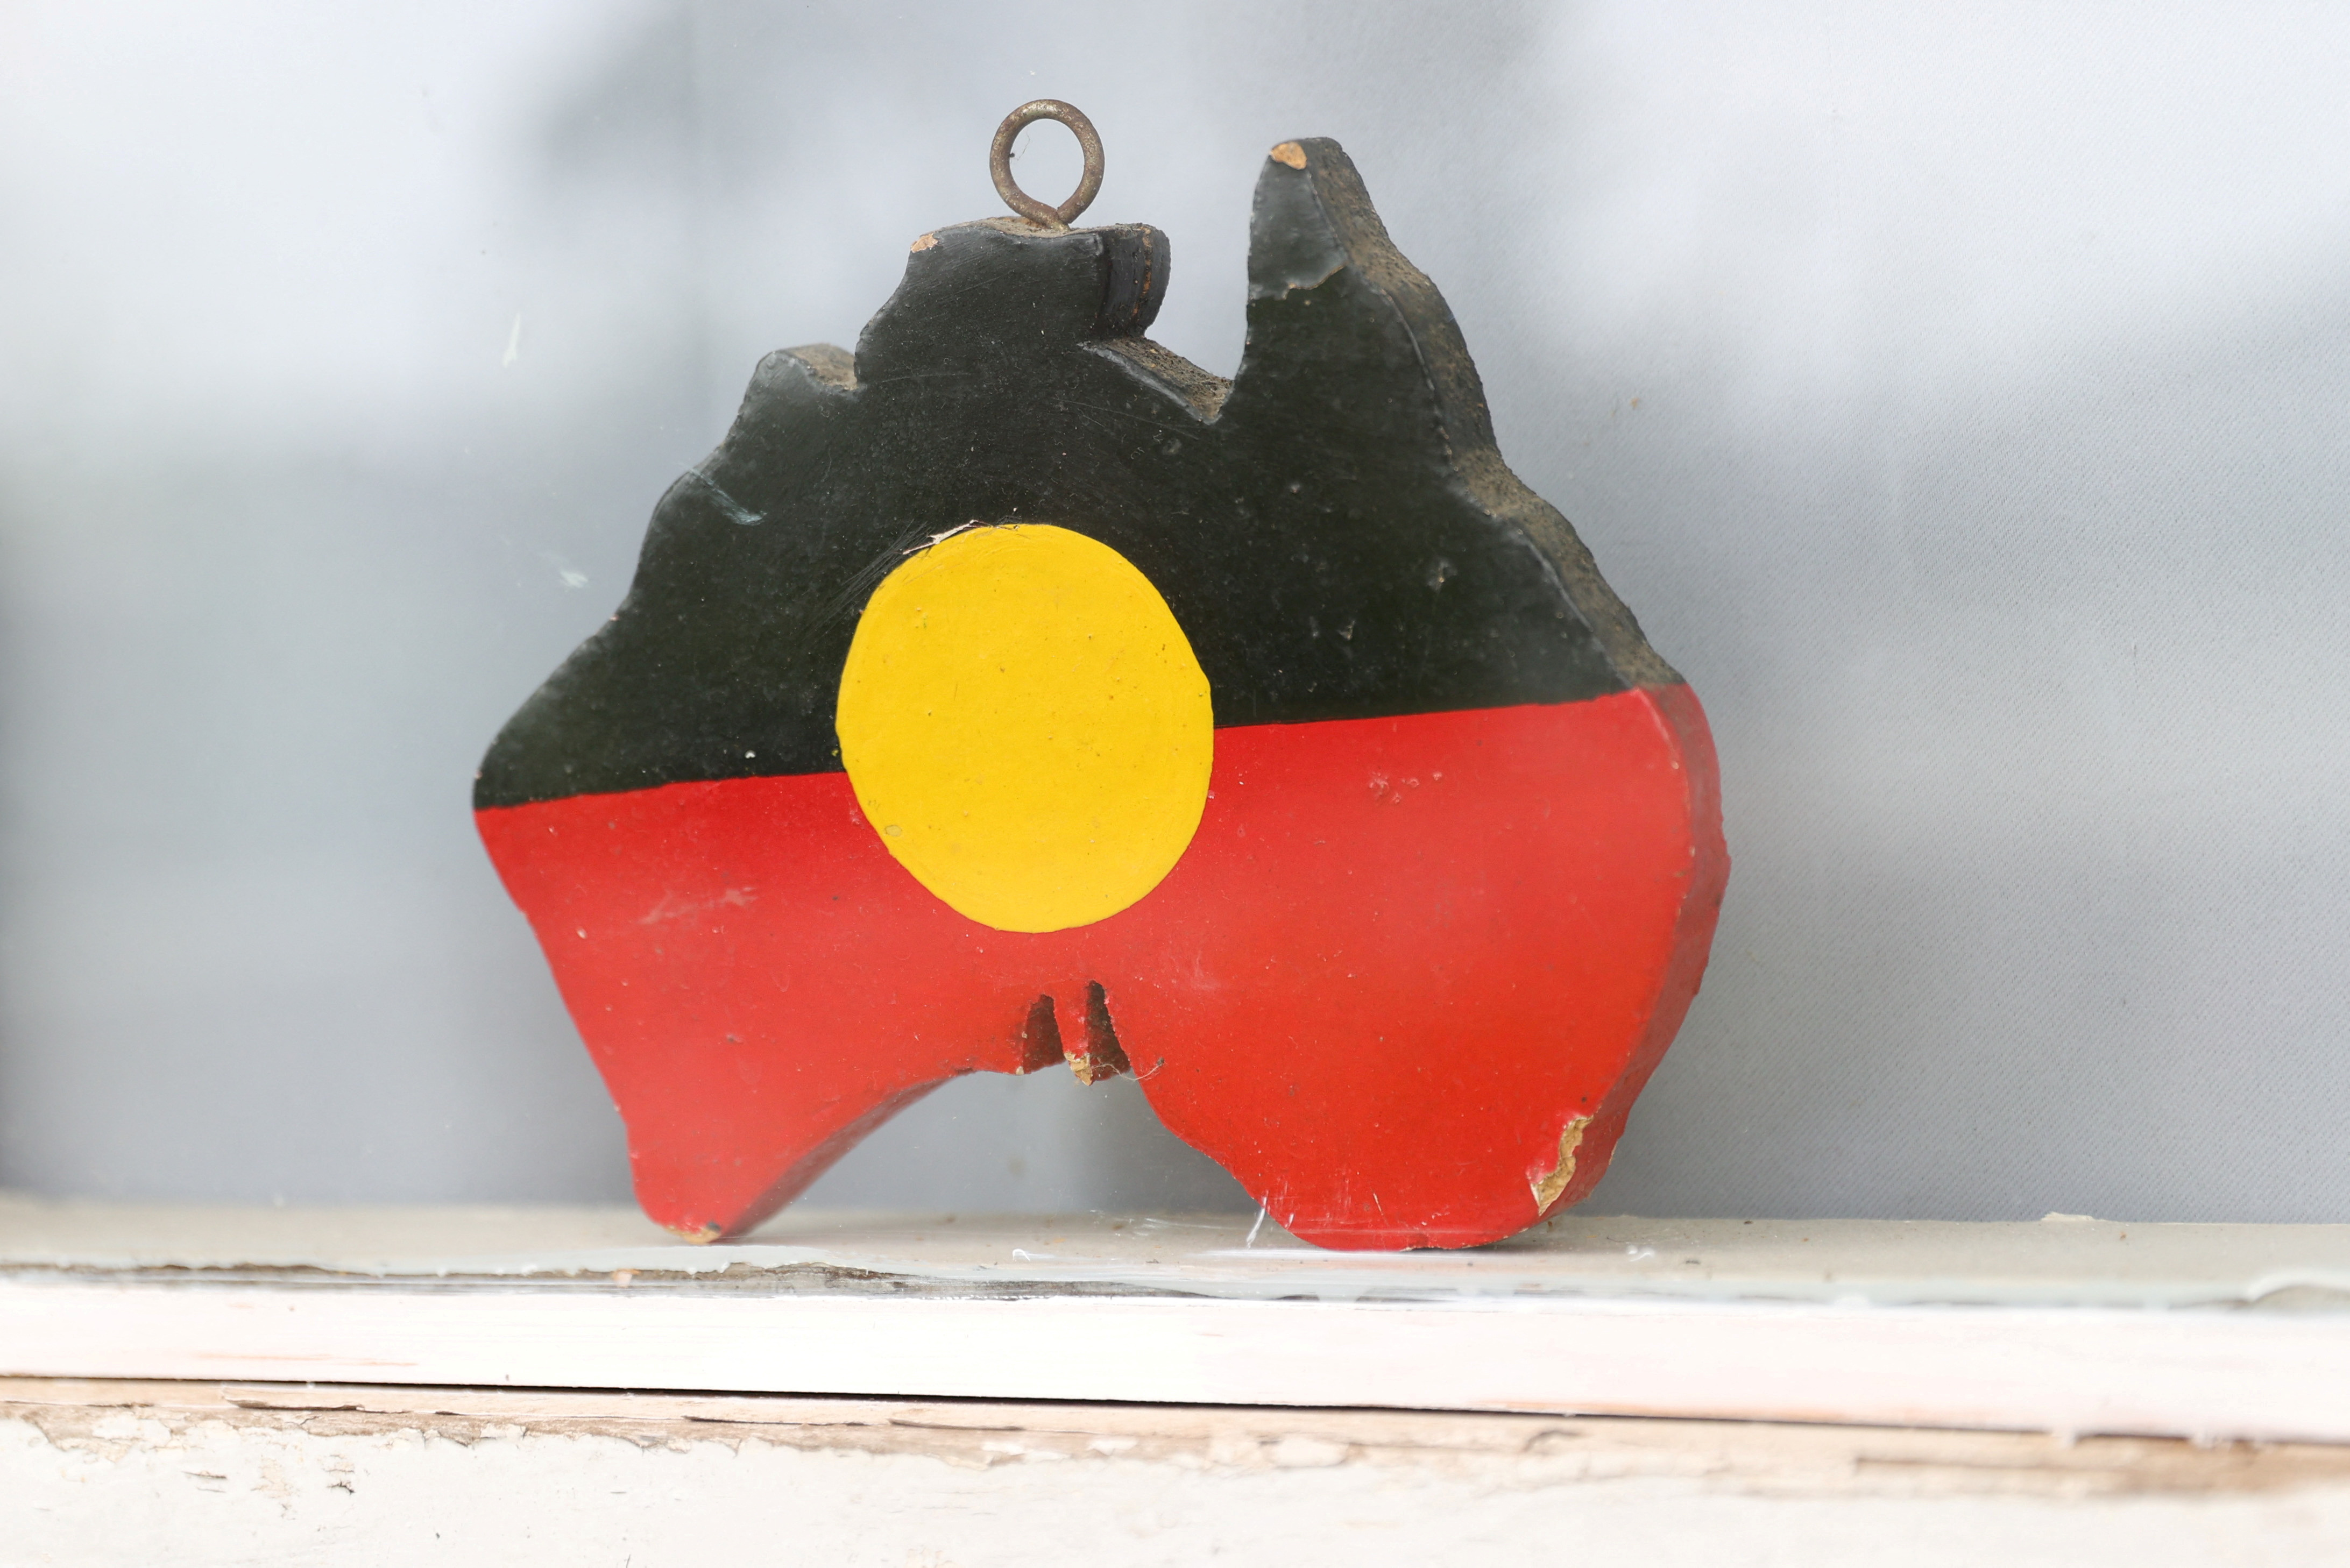 aboriginal